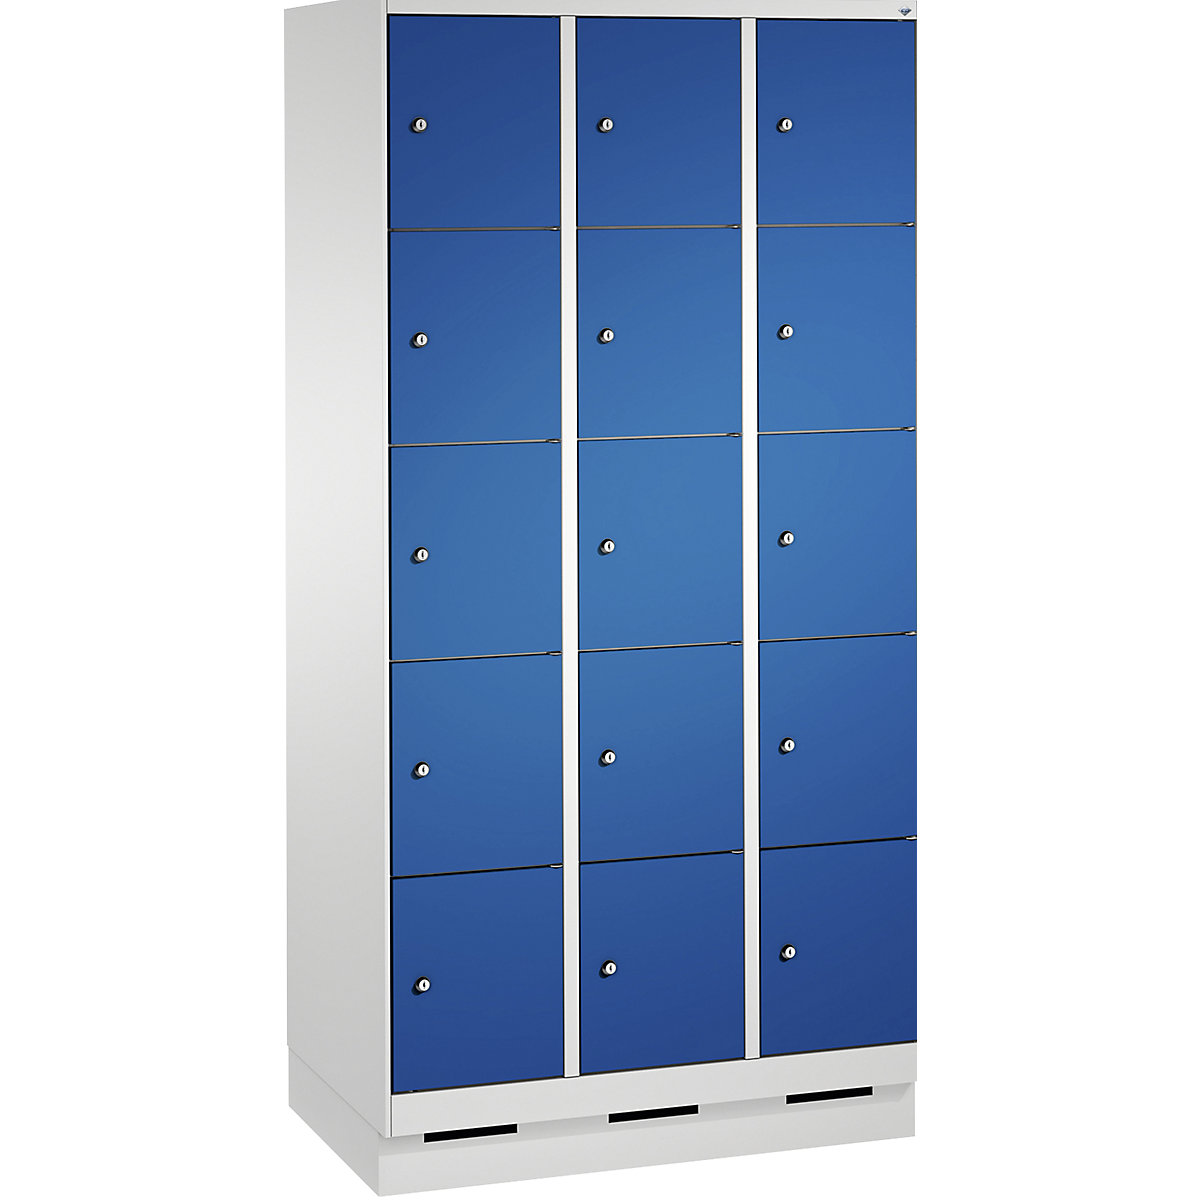 Armoire à casiers sur socle EVOLO – C+P, 3 compartiments, 5 casiers chacun, largeur compartiments 300 mm, gris clair / bleu gentiane-8